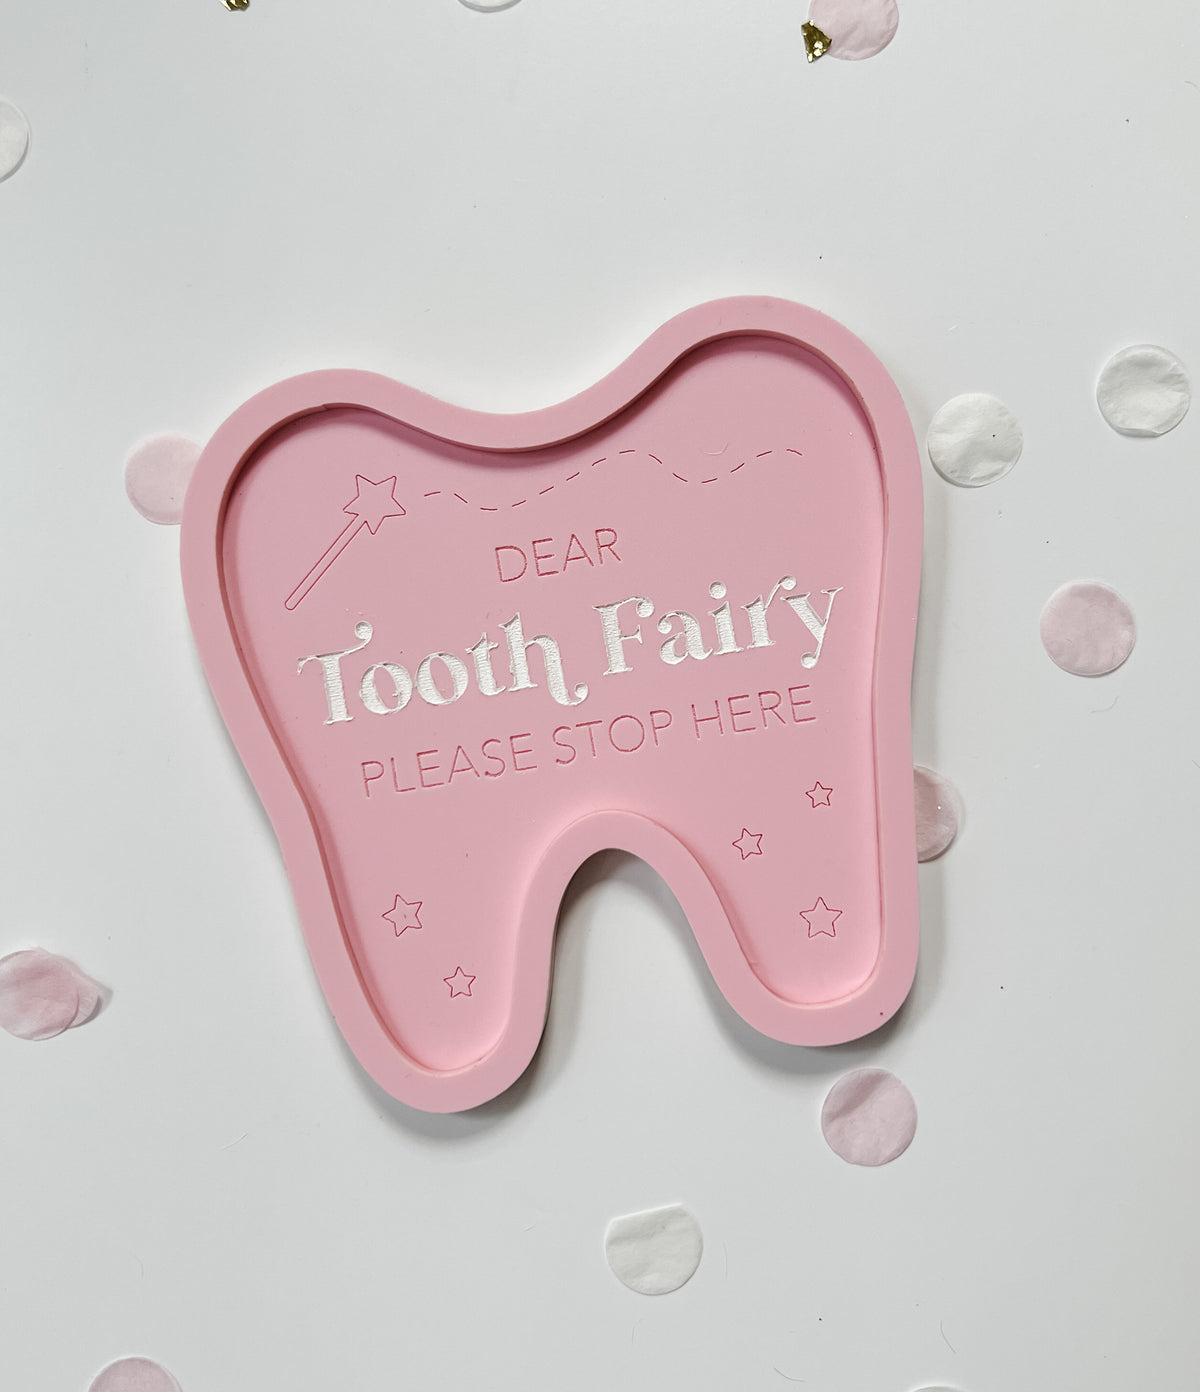 Acrylic Tooth Fairy Tray